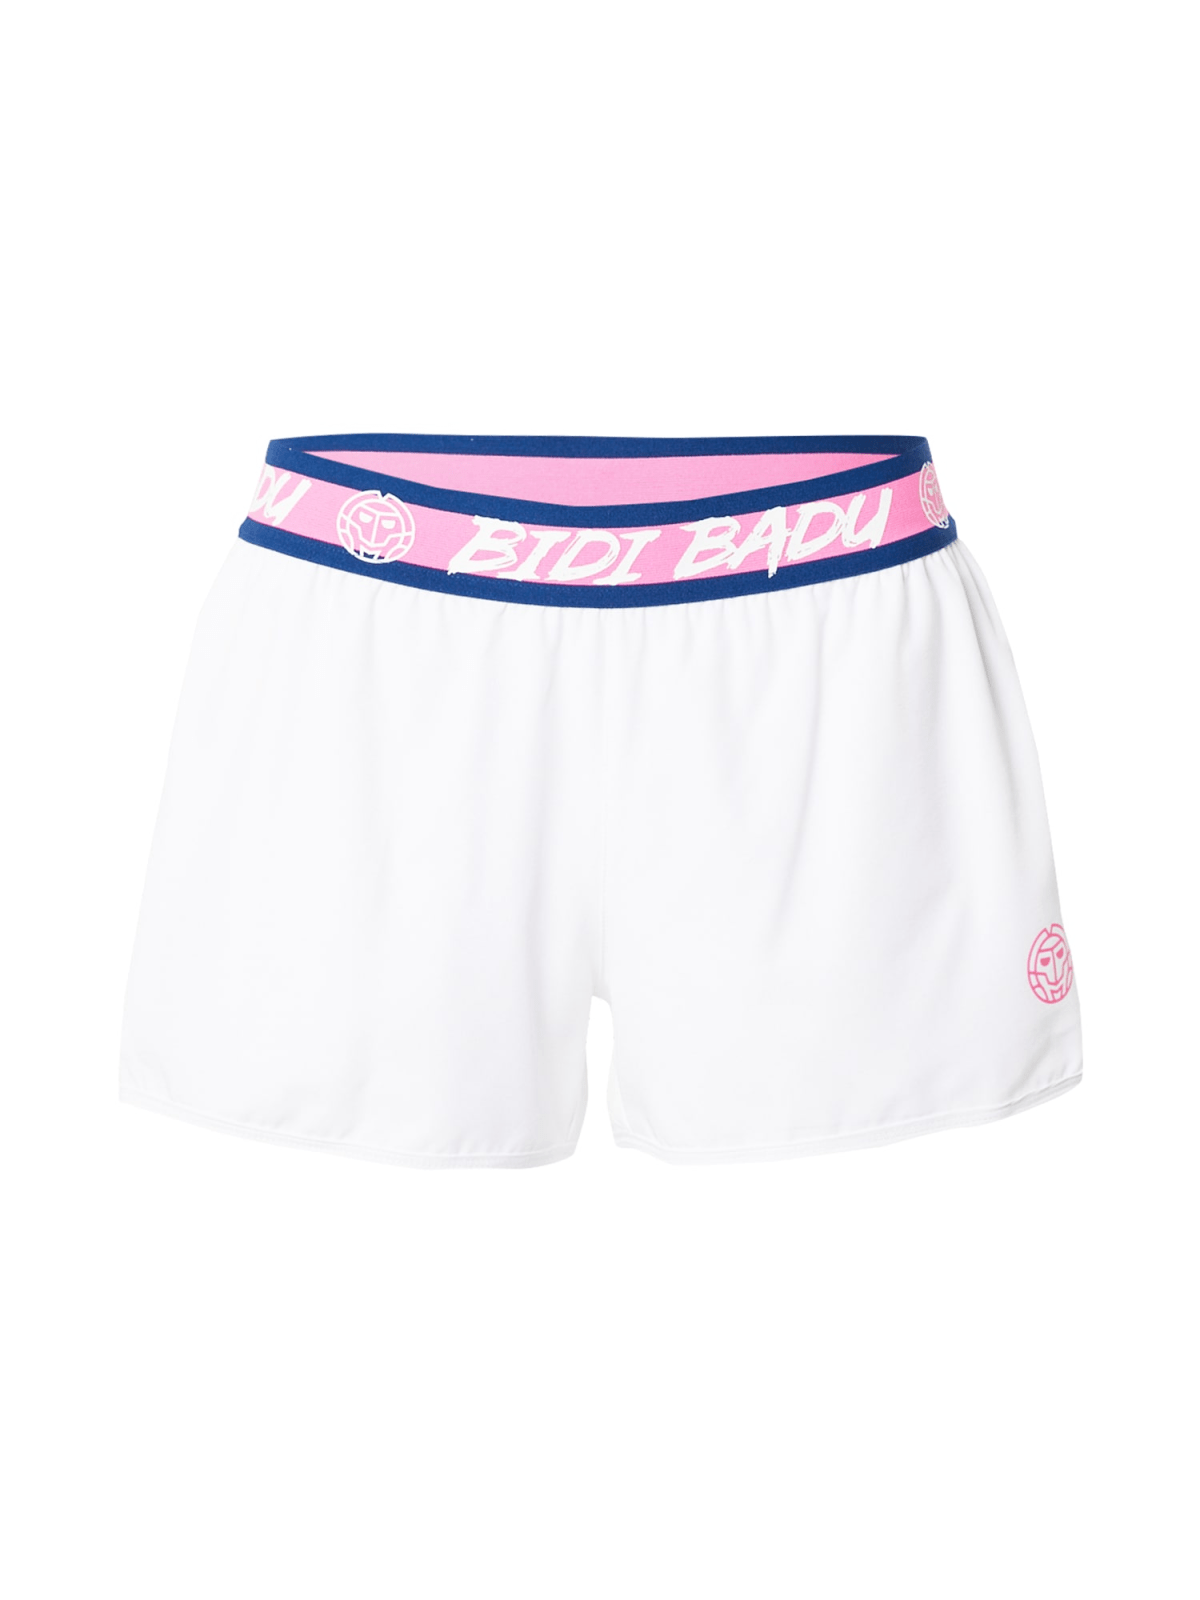 BIDI BADU Športne hlače 'Kara Tech Shopri'  modra / roza / bela